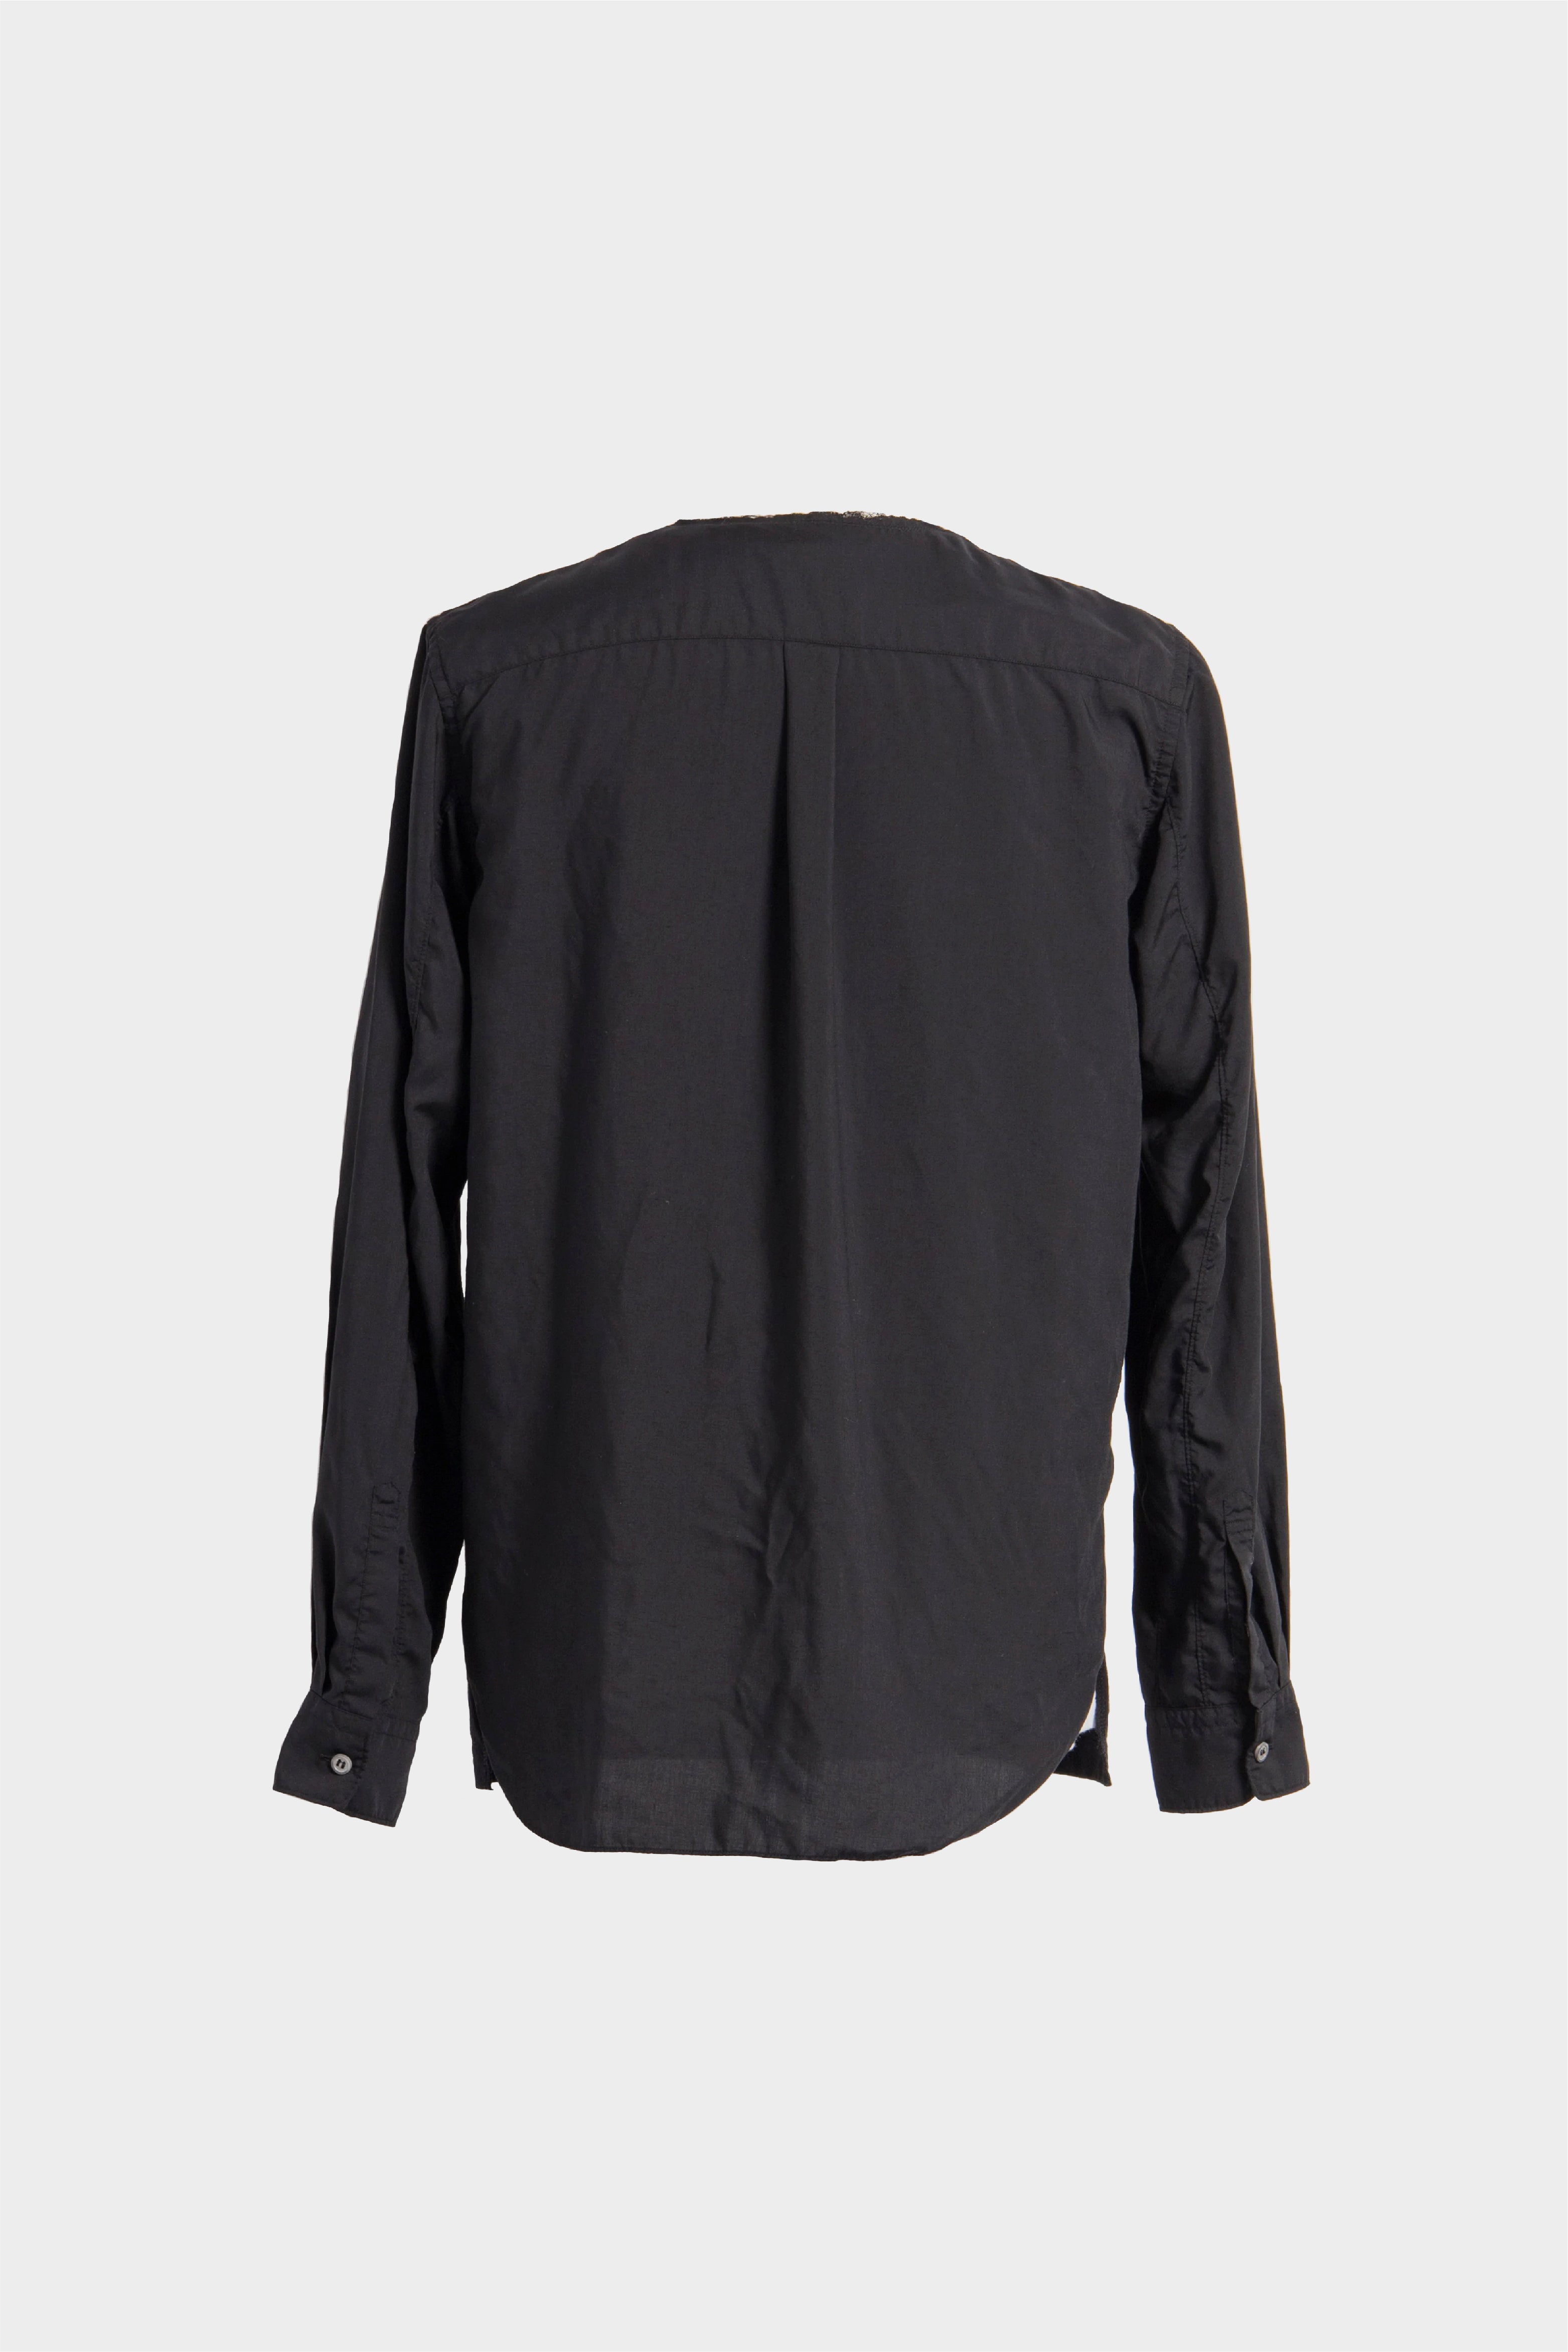 Selectshop FRAME - COMME DES GARÇONS BLACK Unisex Pullover Sweats-Knits Concept Store Dubai